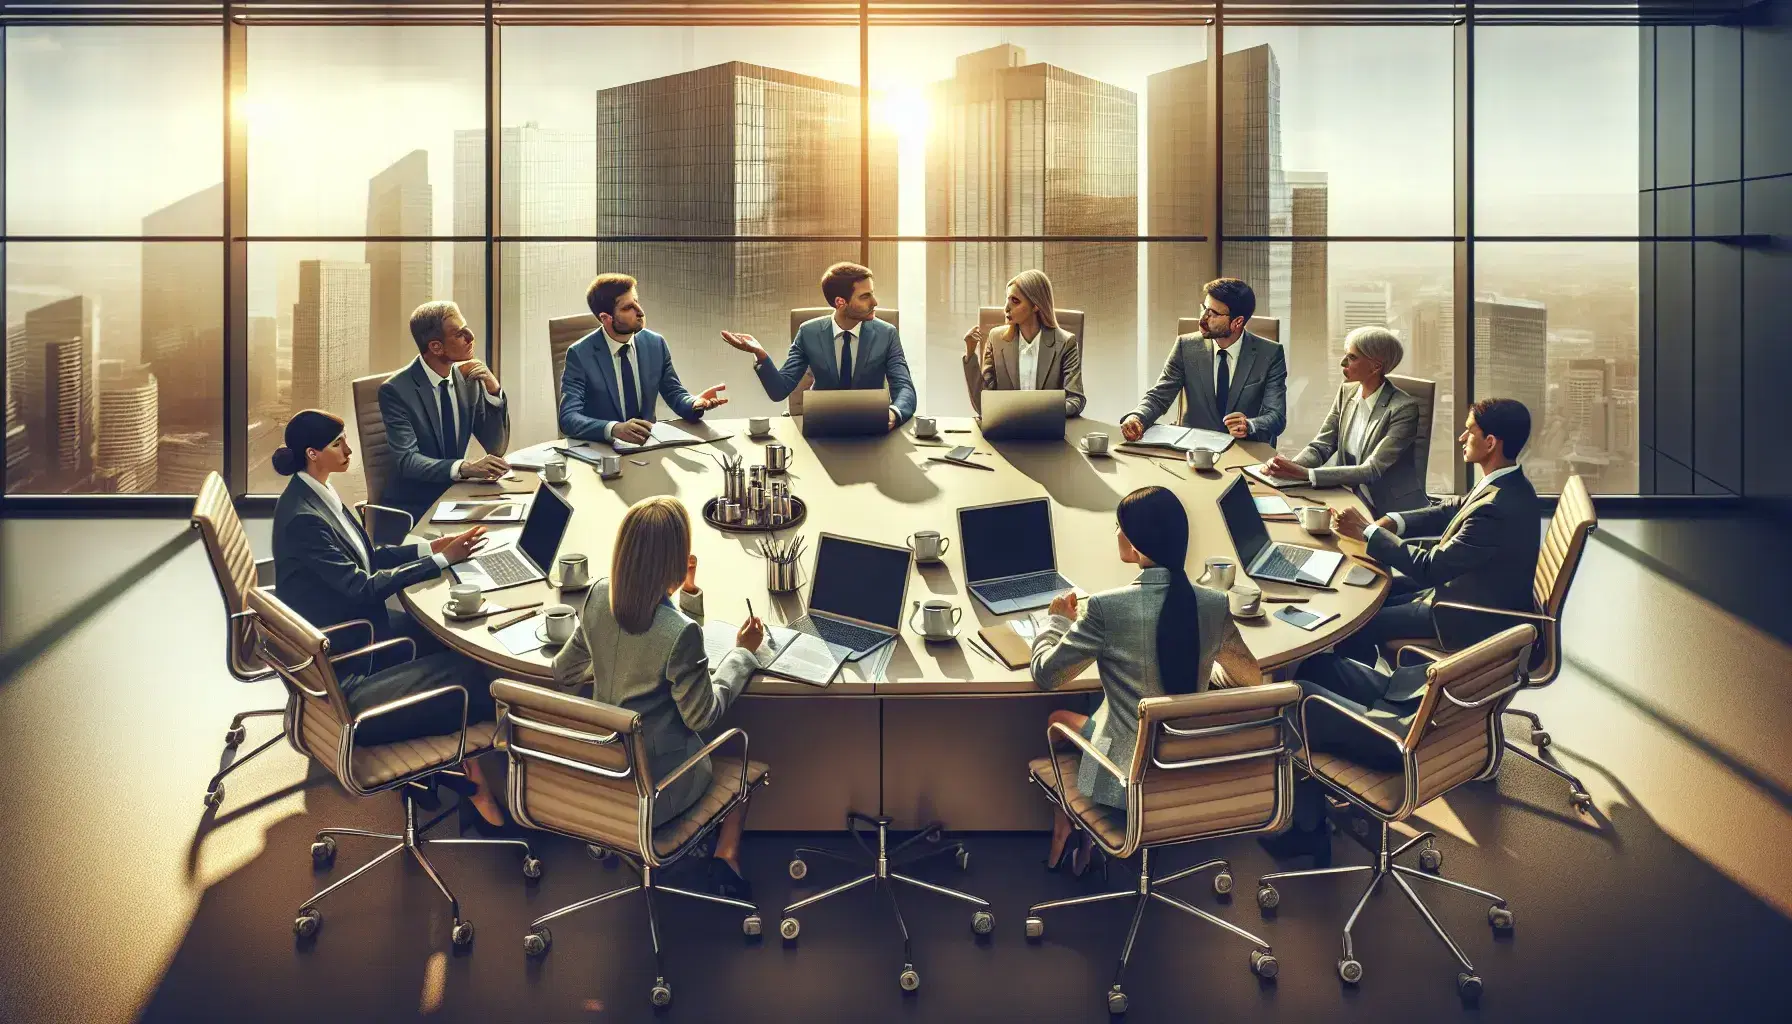 Gruppo di cinque professionisti in riunione attorno a un tavolo ovale in una sala conferenze luminosa con vista sulla città.